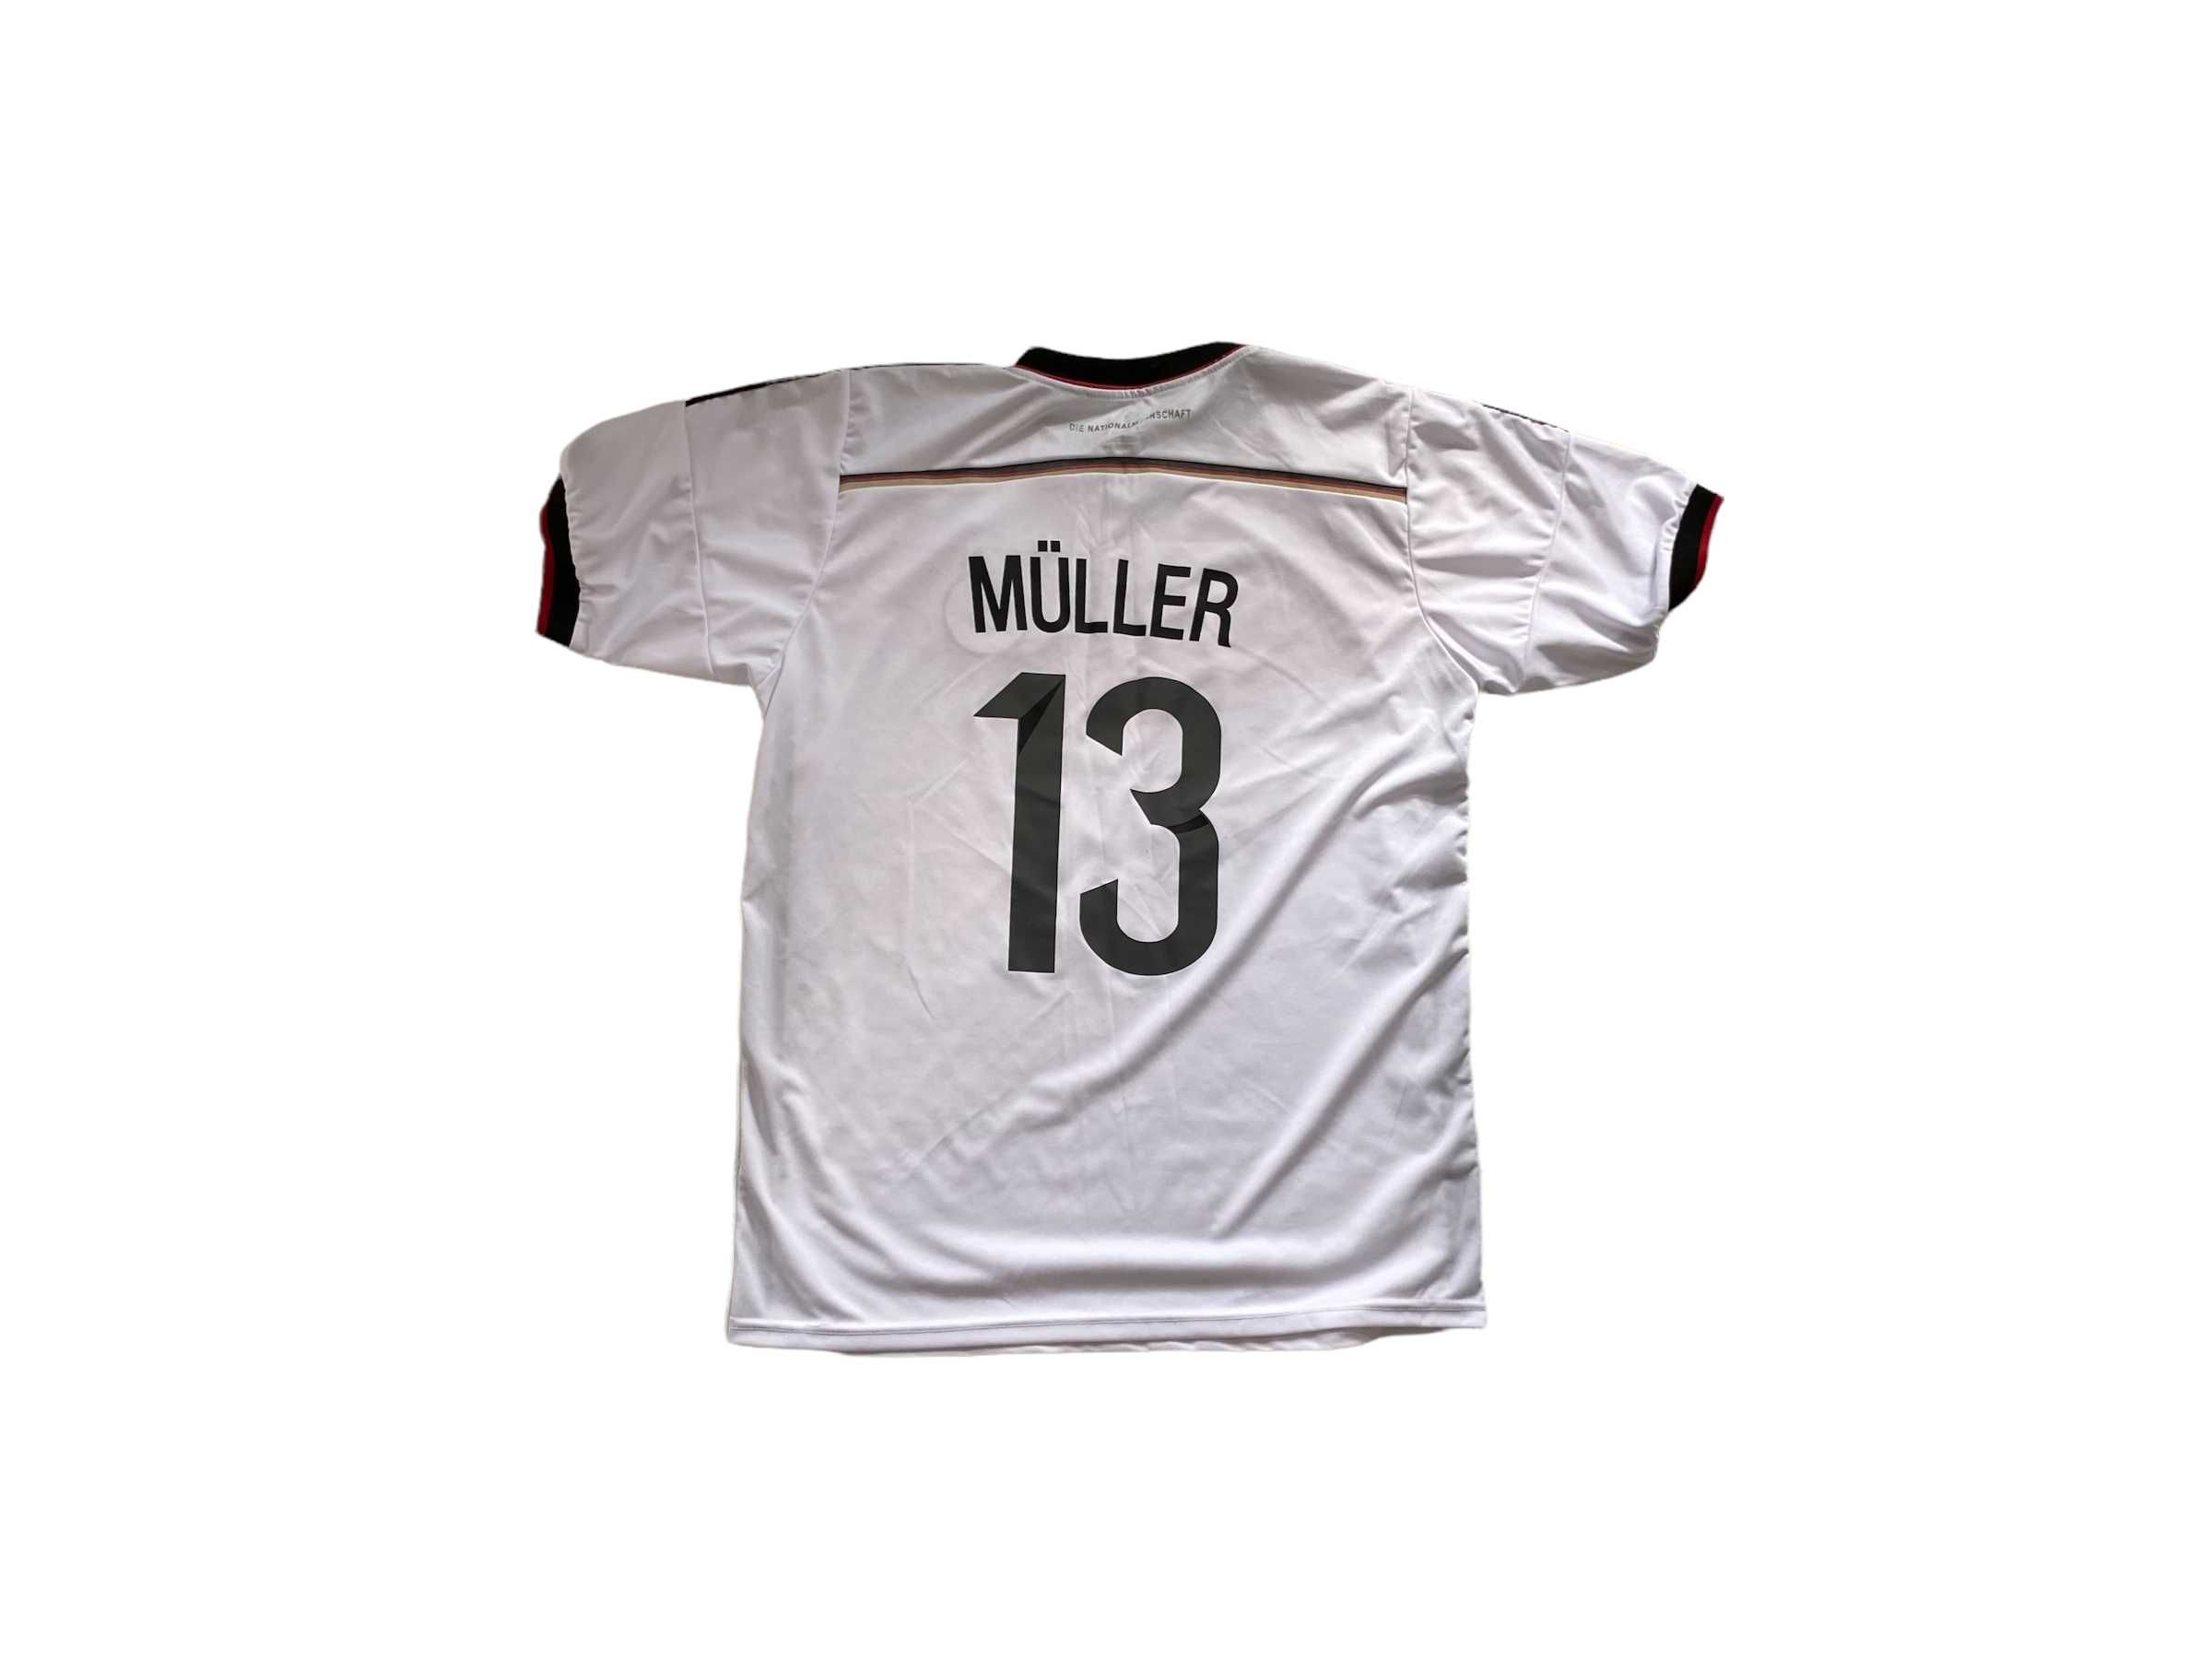 Adidas Niemcy Muller jersey, rozmiar XL, stan bardzo dobry